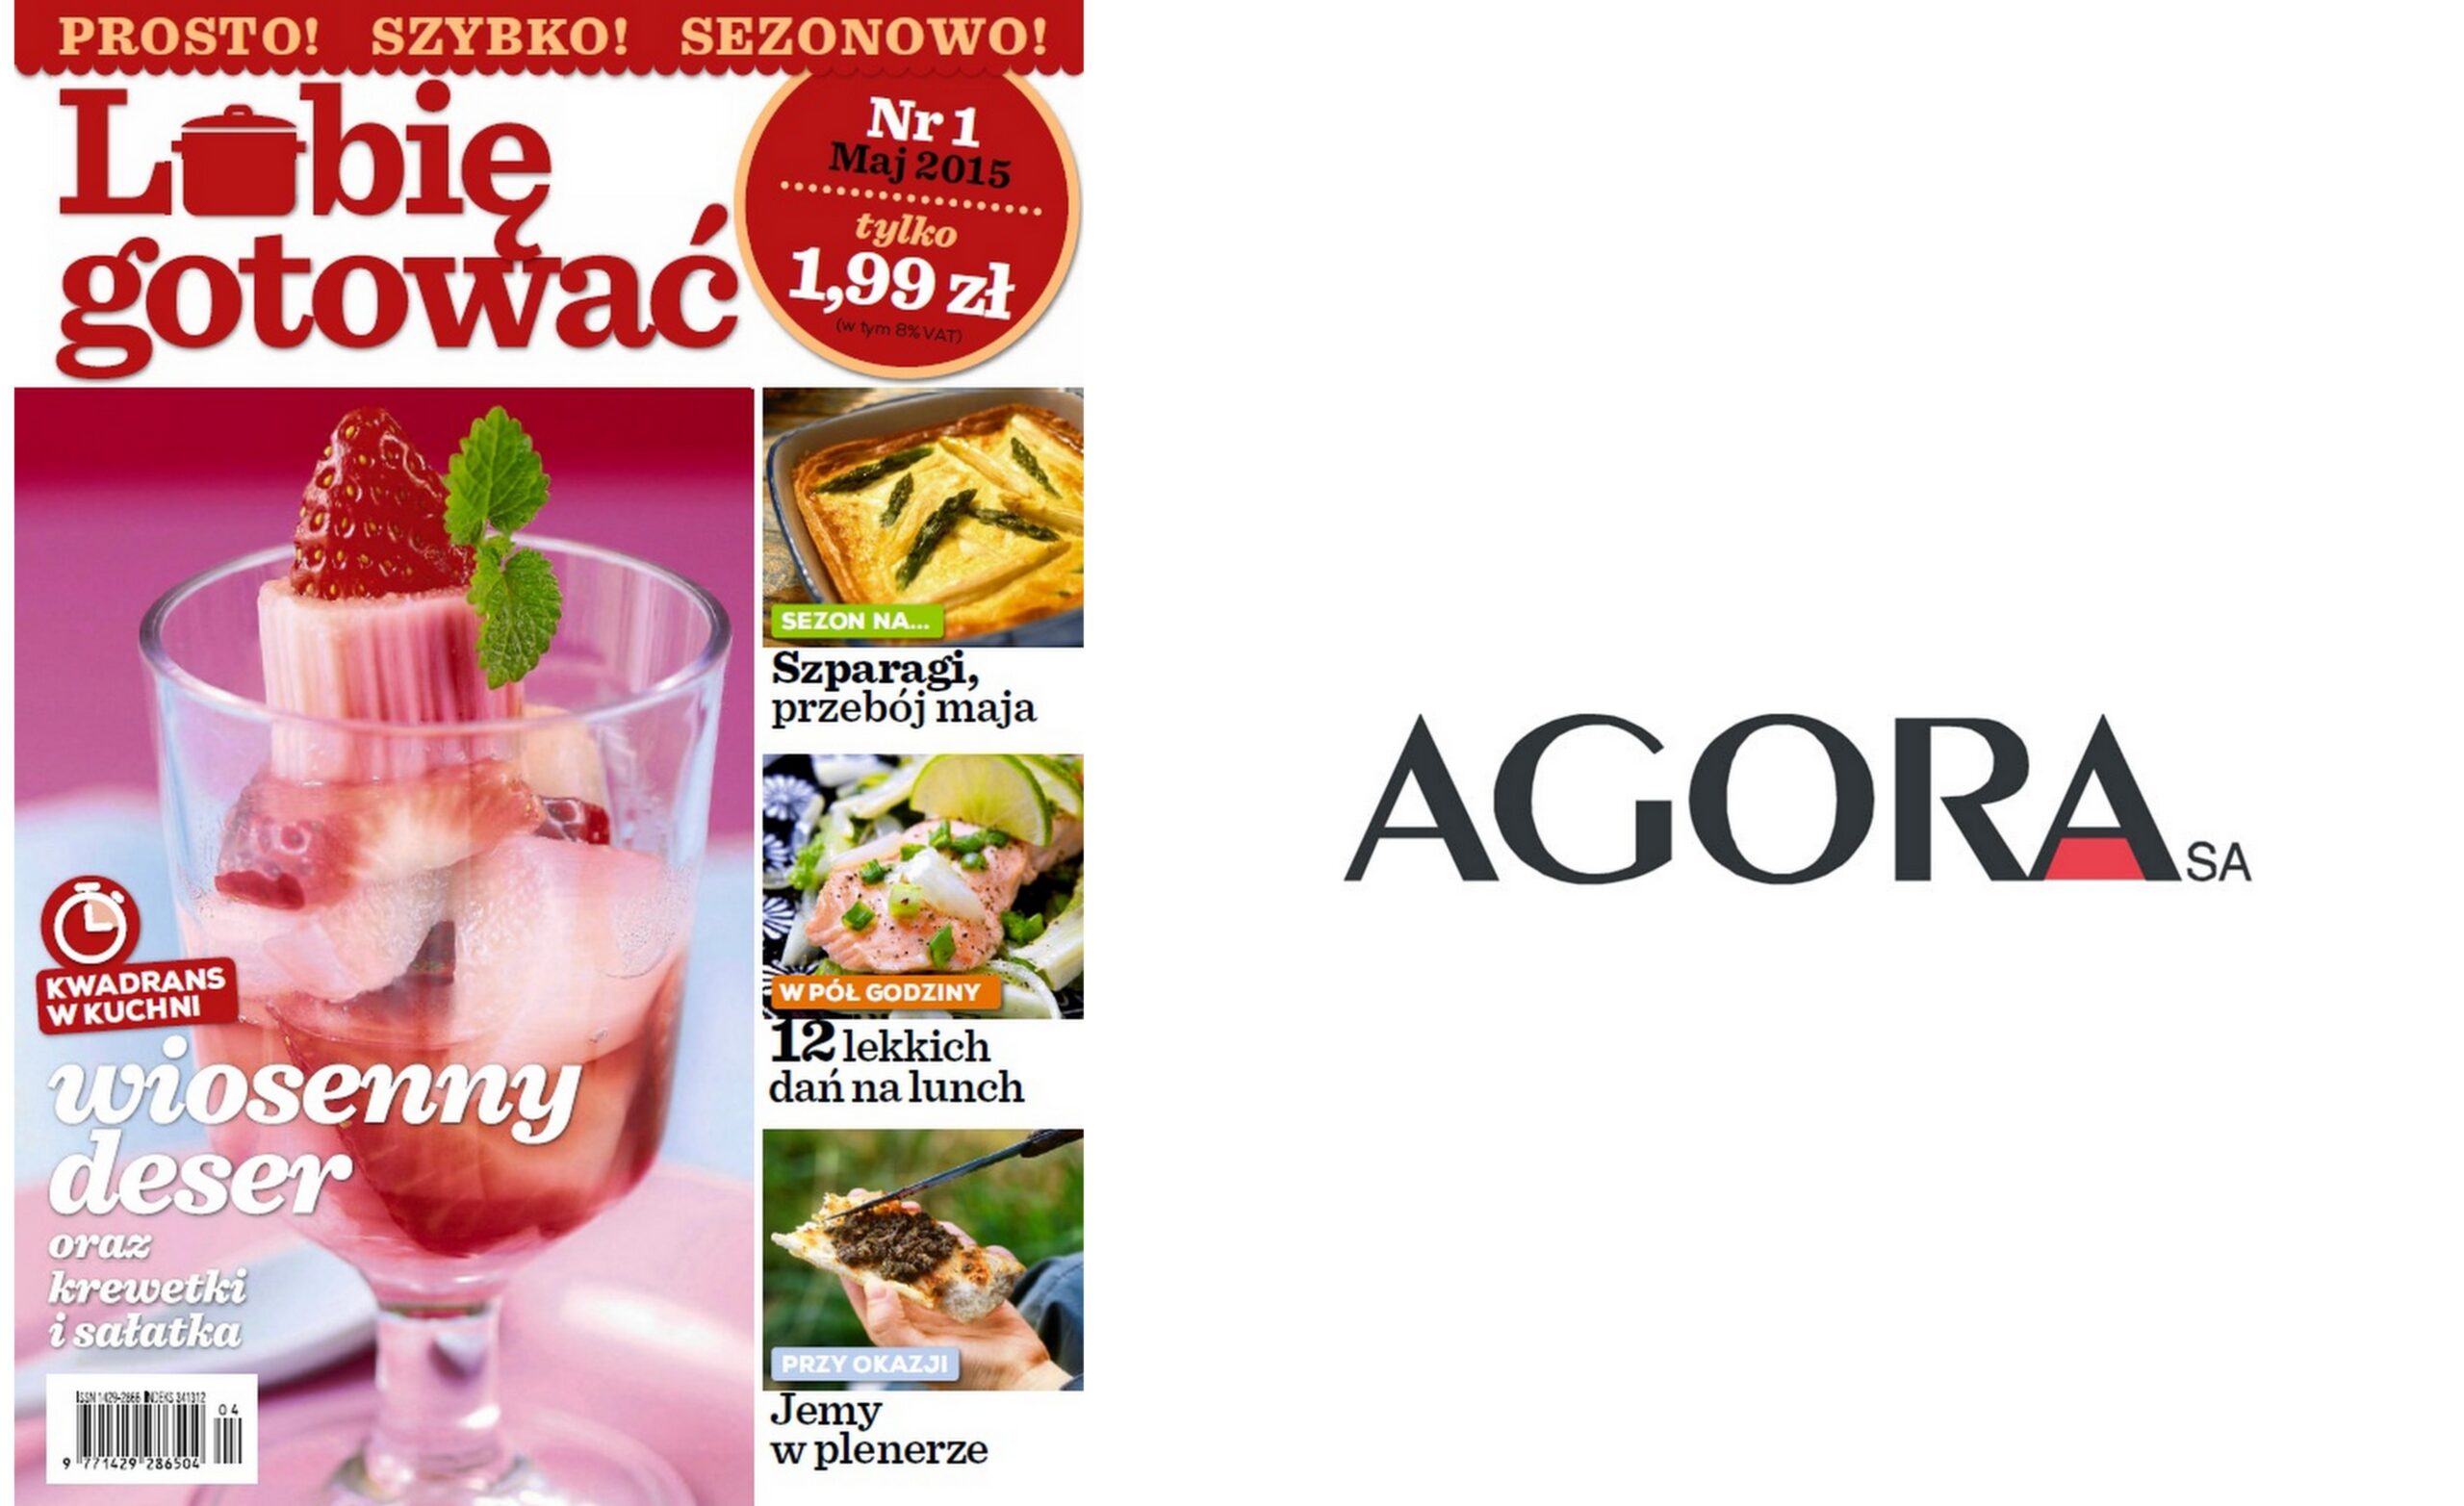 Nowy magazyn Agory miesięcznik mediarun com lubie gotowac scaled